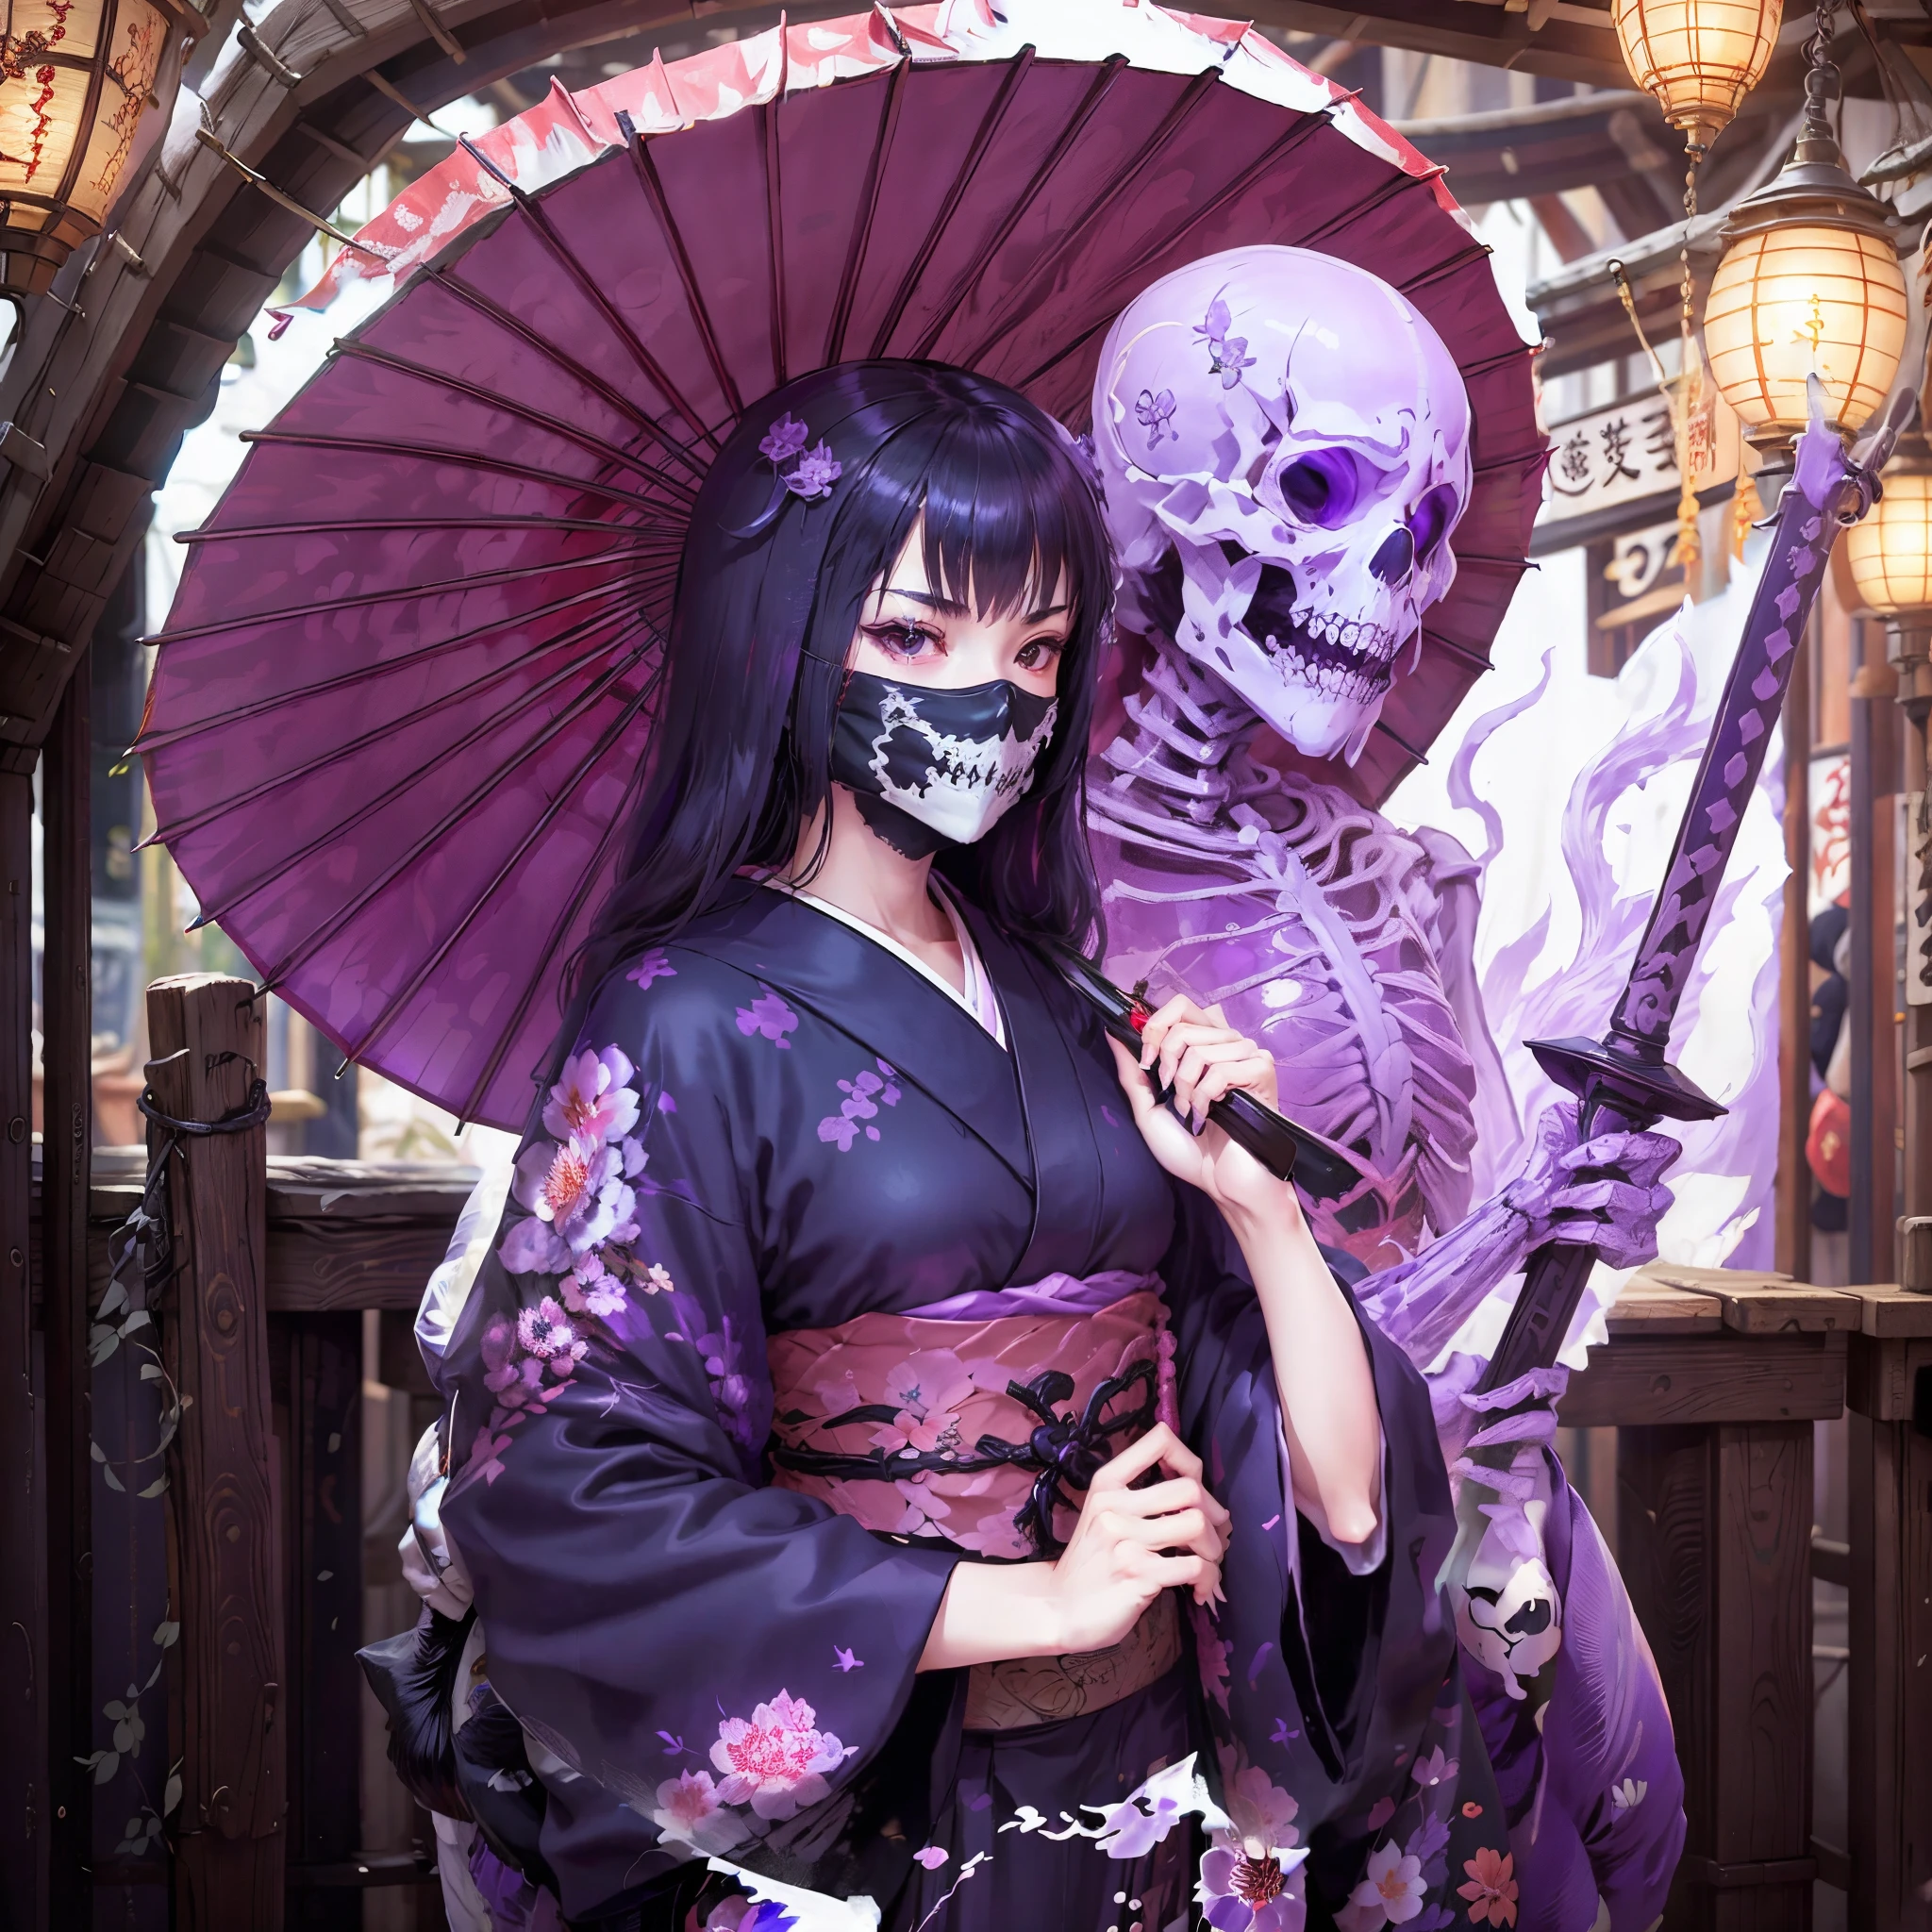 Chica en kimono. ella levanta su espada. Paraguas japonés. usar huesos. Una máscara con forma de esqueleto que cubre la boca.. Un esqueleto translúcido de color púrpura aparece detrás de la niña.. Llama morada.